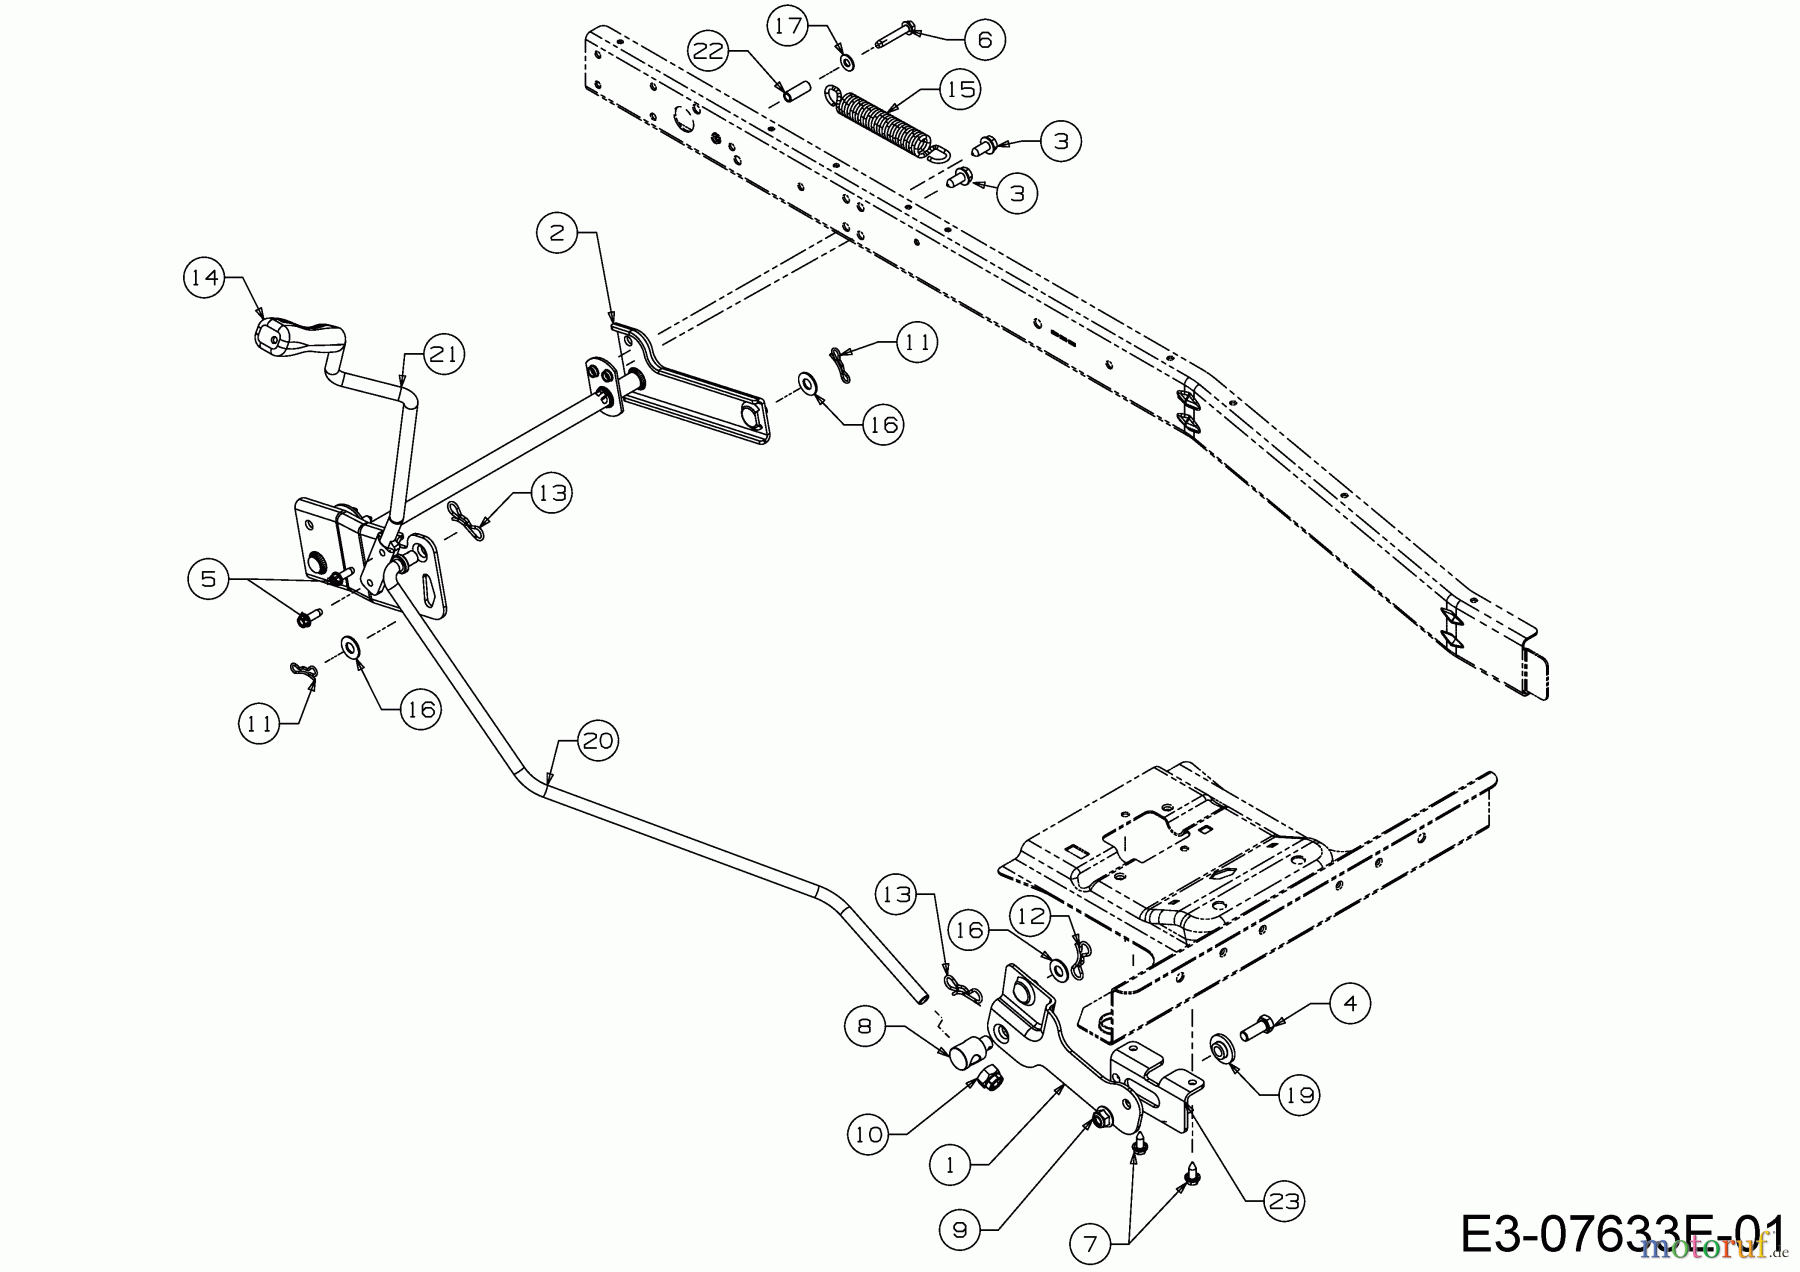  WOLF-Garten Expert Rasentraktoren Expert Scooter Pro Hydro 13A221HD650  (2017) Mähwerksaushebung